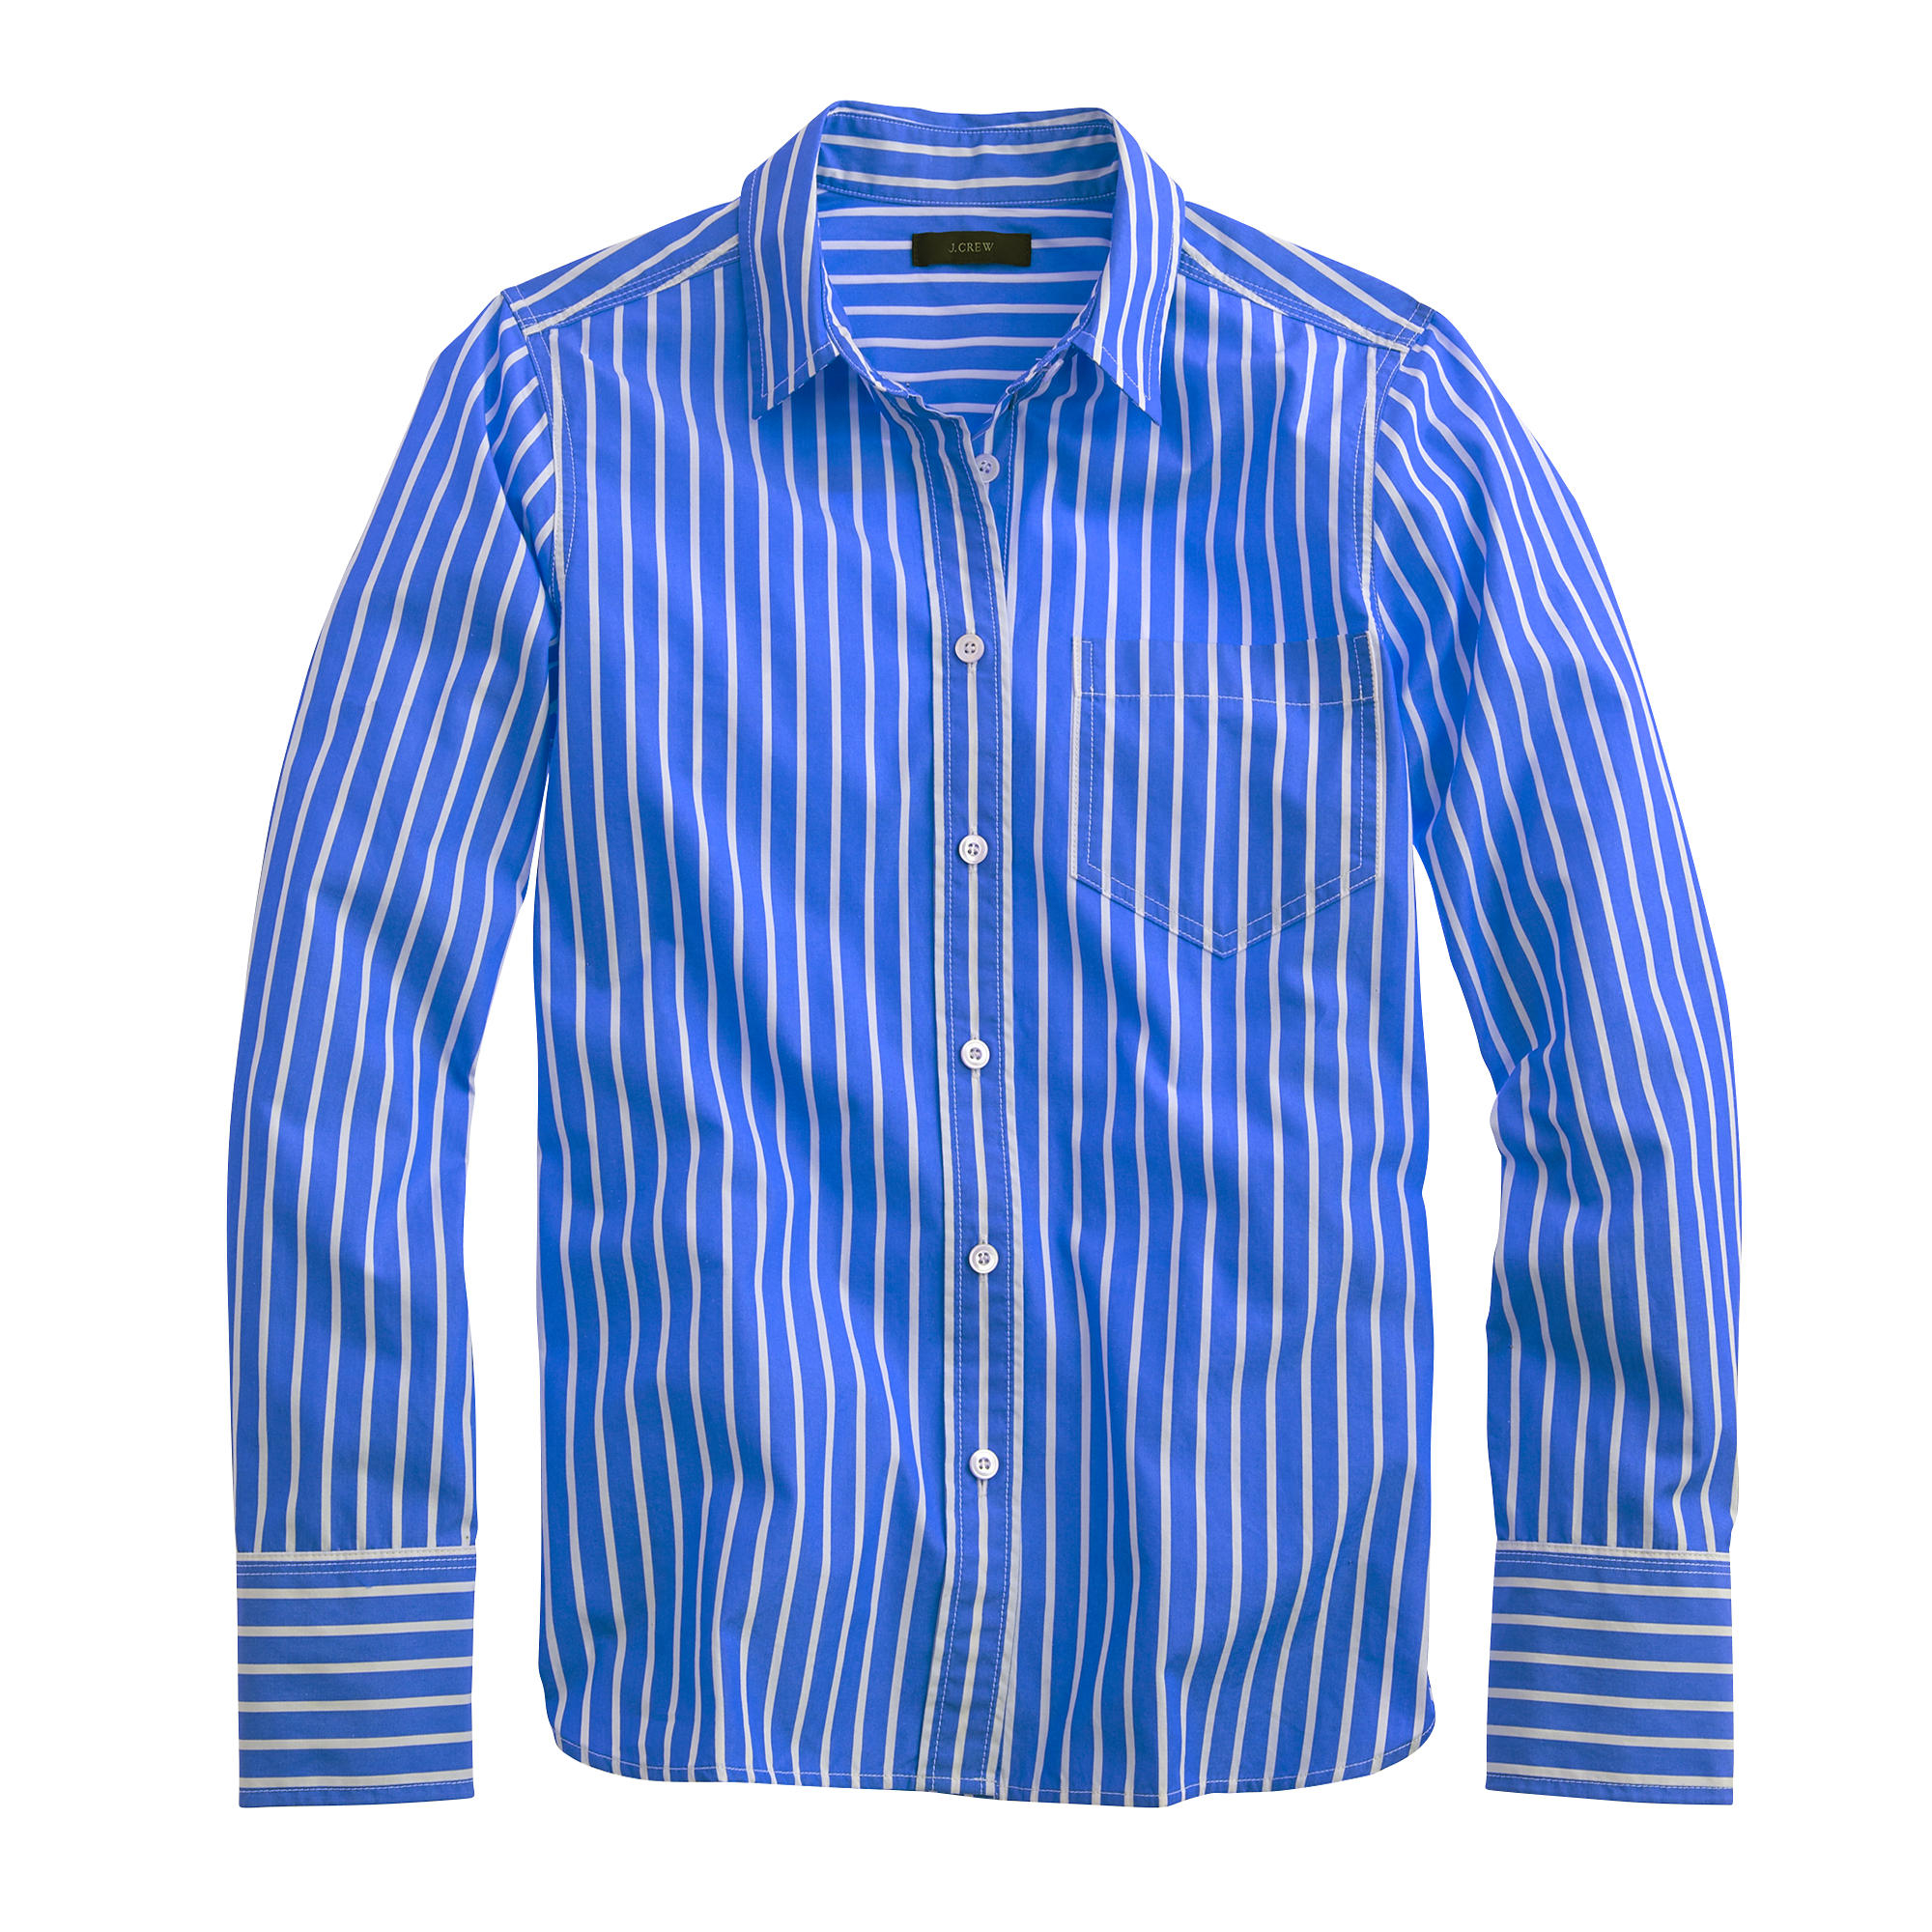 J.Crew Petite Vertical-striped Shirt in Blue - Lyst